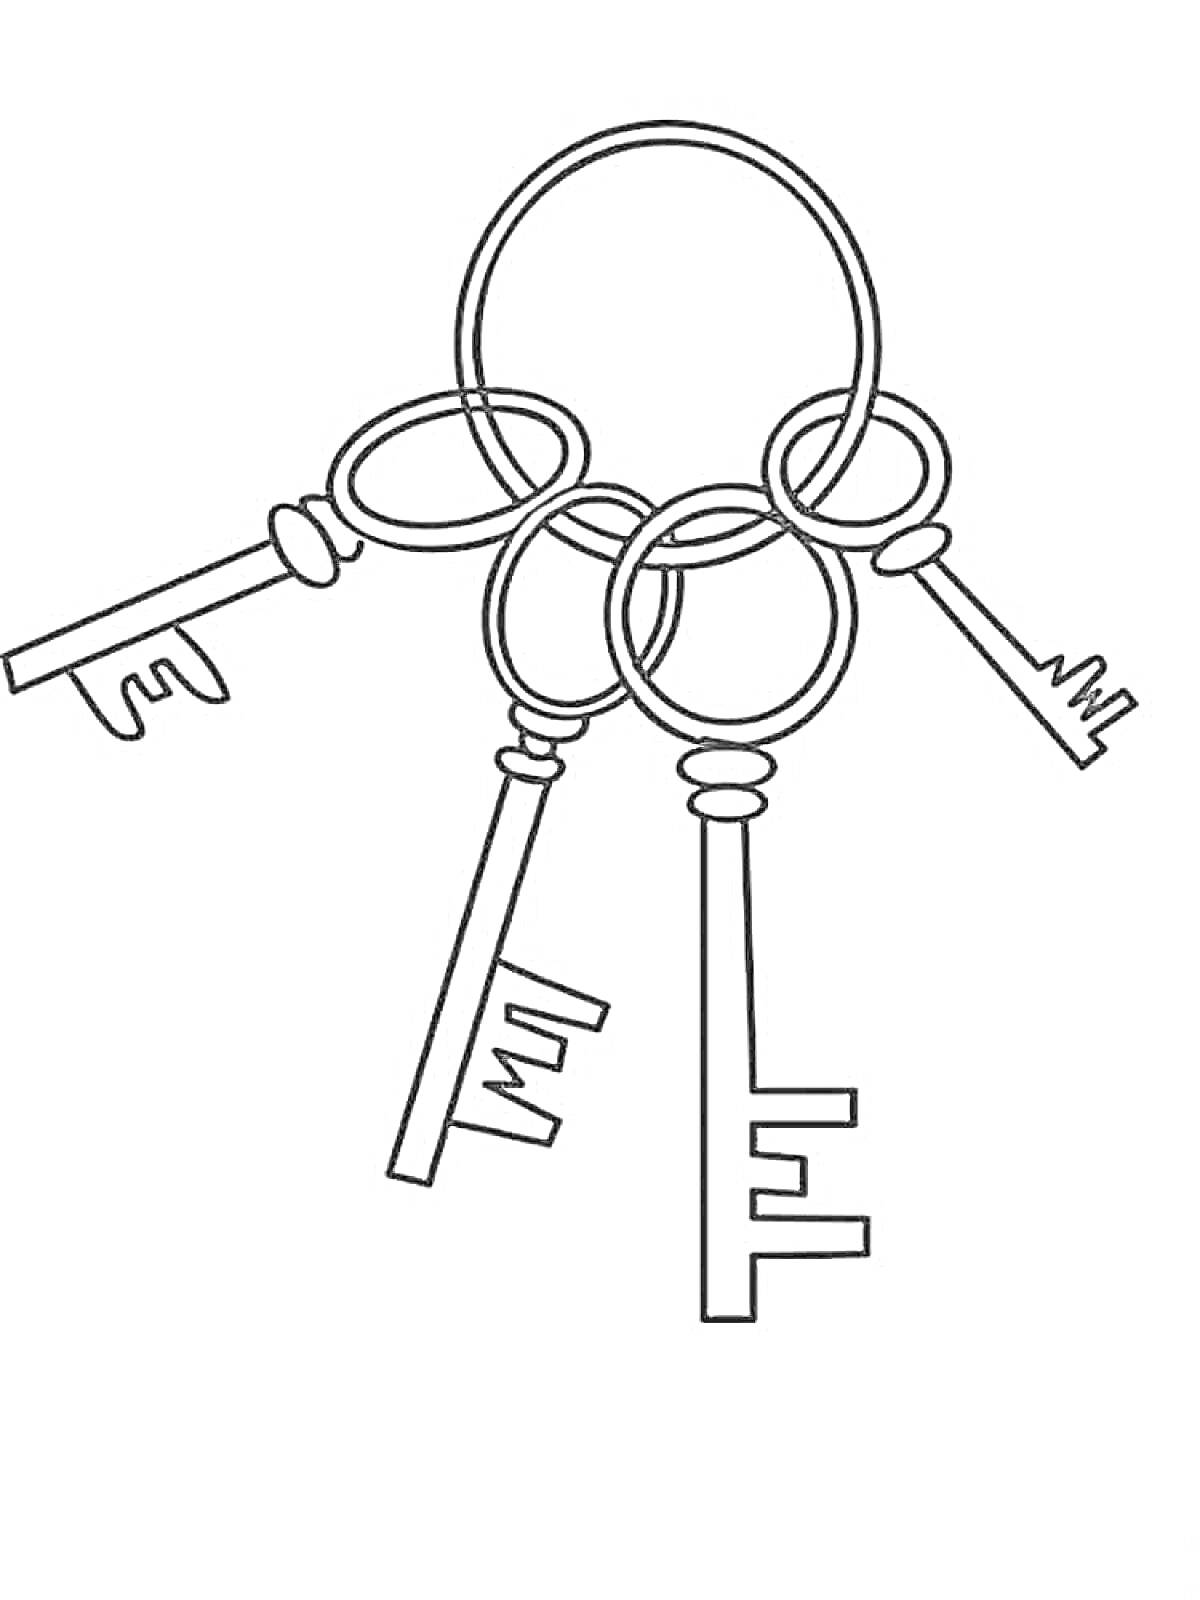 Раскраска Связка из четырёх ключей на кольце